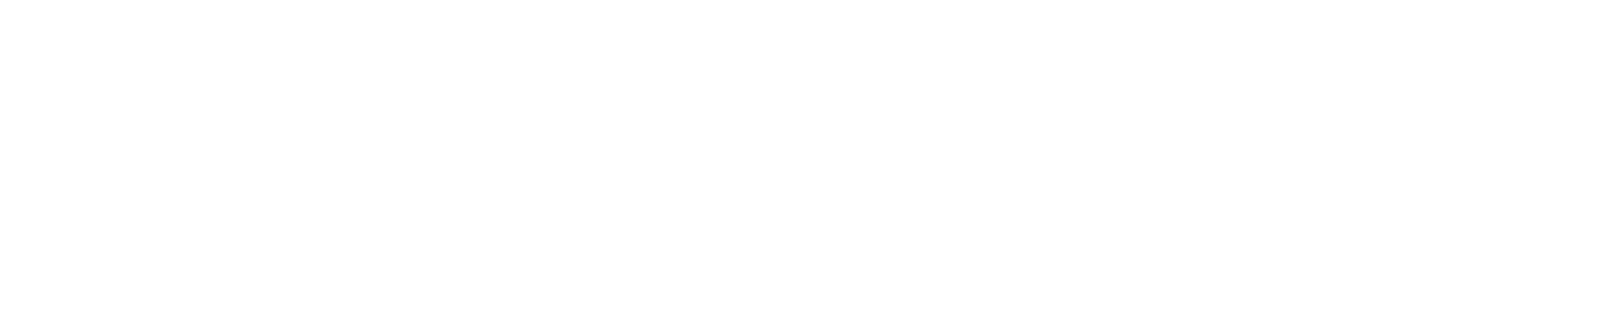 Maybank logo grand pour les fonds sombres (PNG transparent)